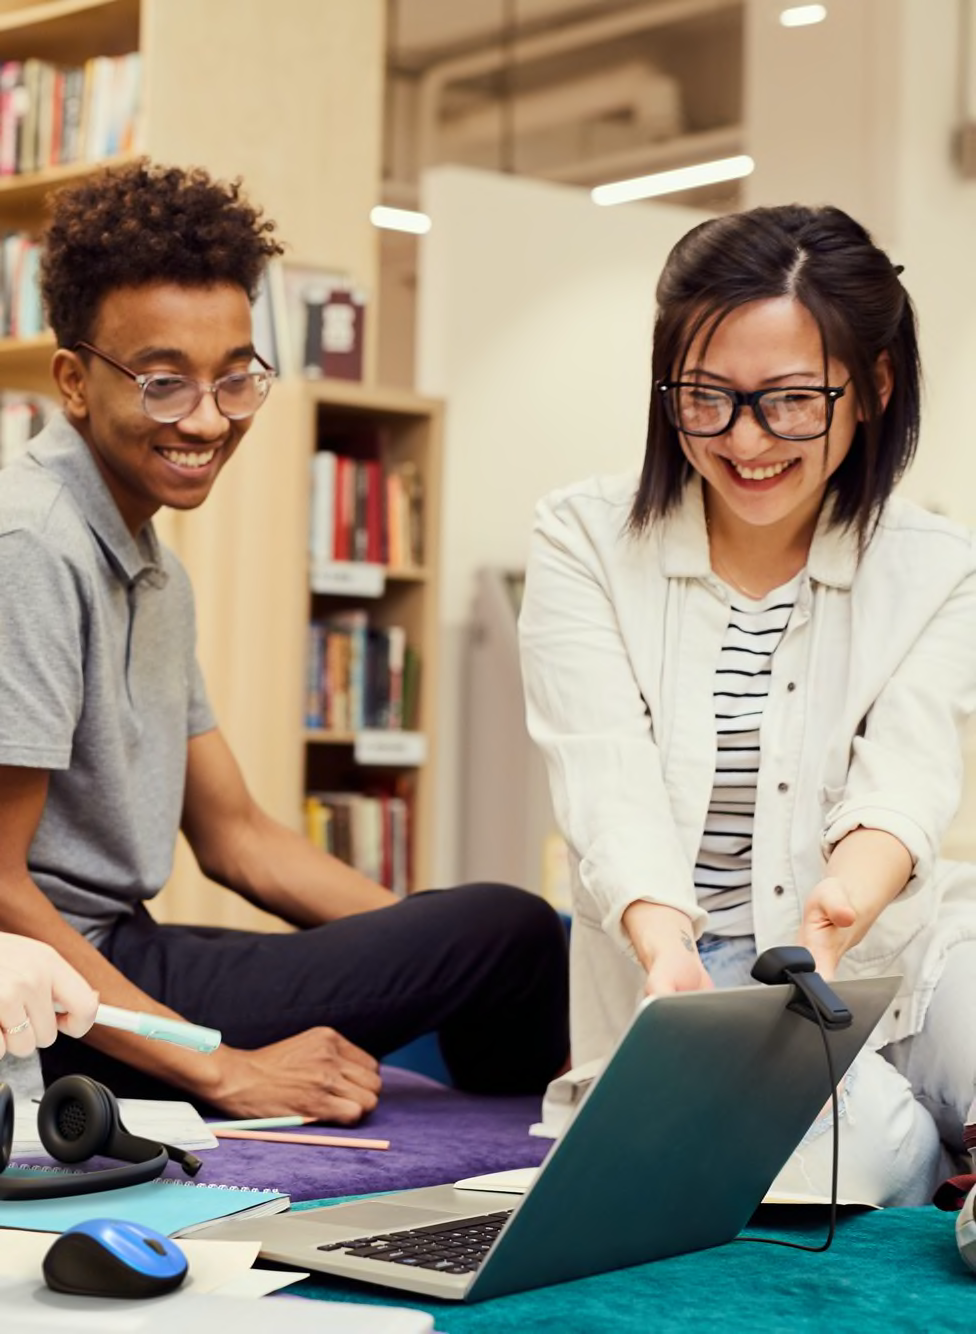 Estudiantes en una biblioteca conectándose a una reunión virtual con un portátil y una cámara web externa